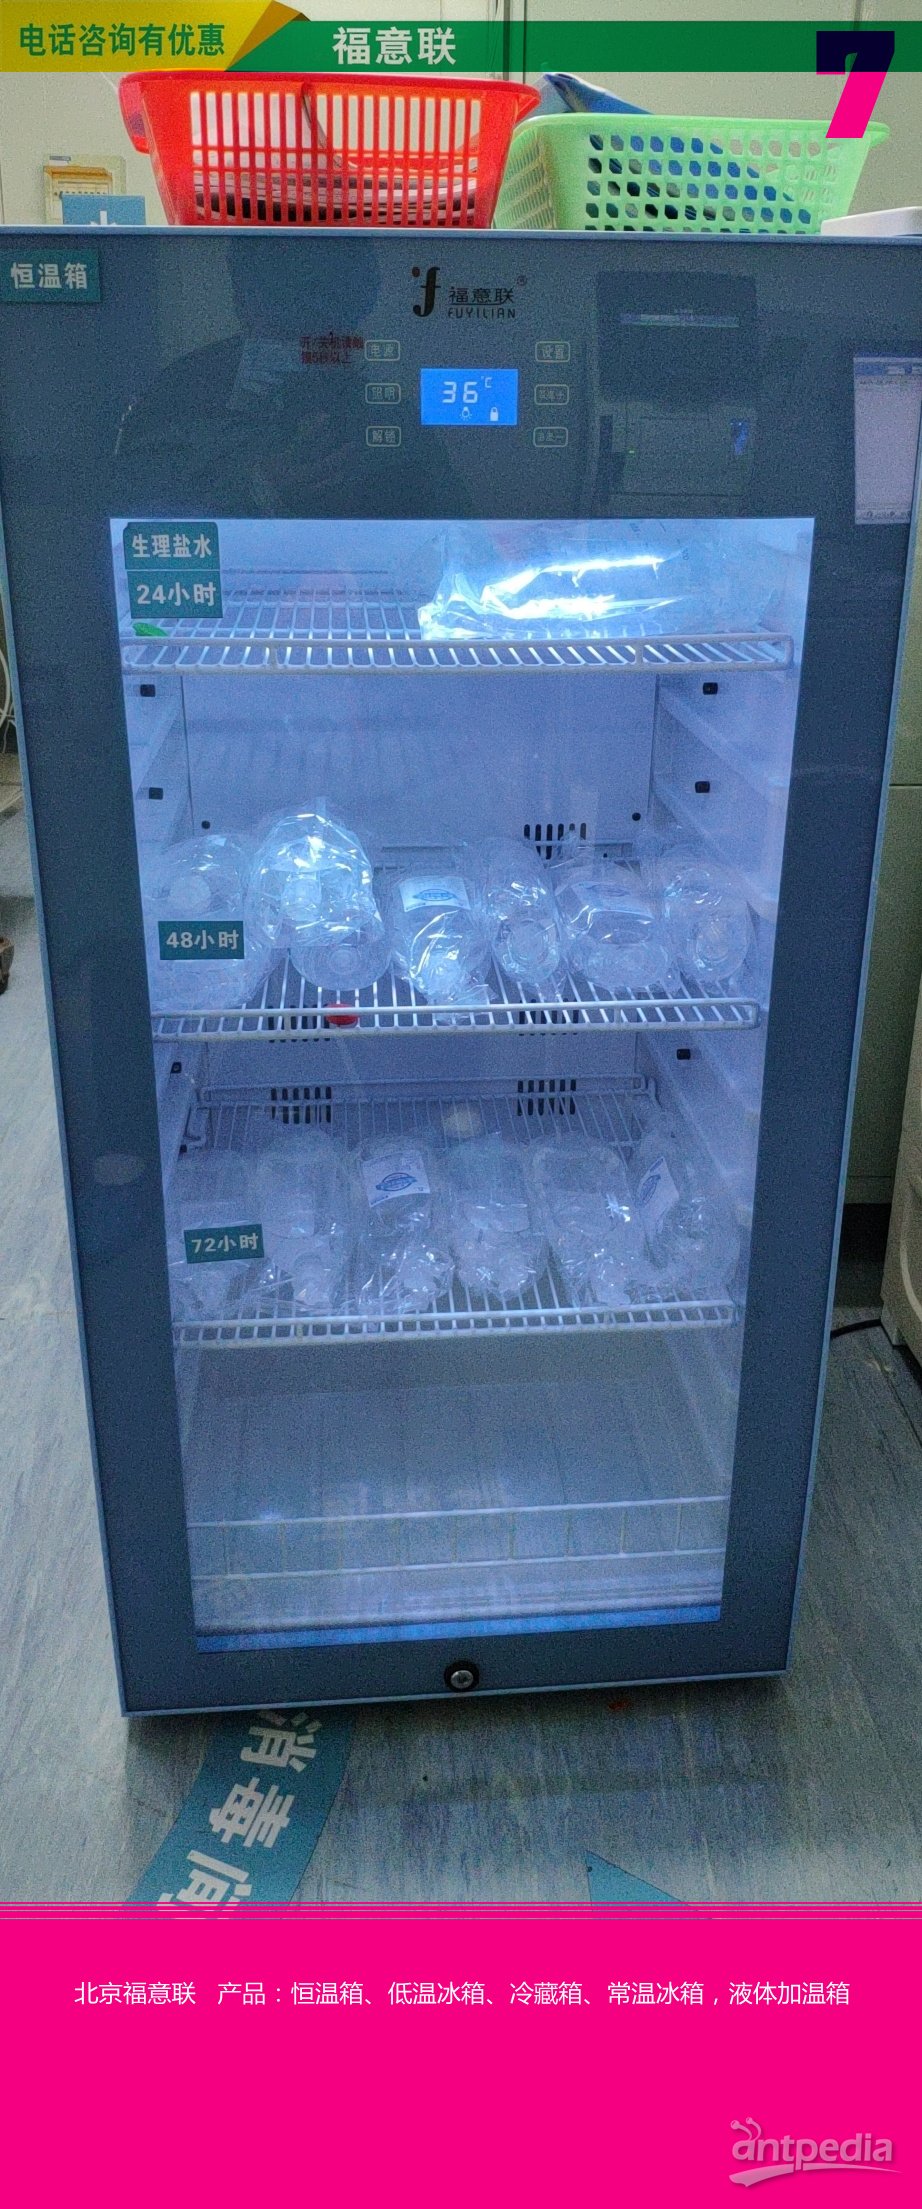 动物房设备小鼠笼具饲养箱、裸小鼠及转基因小鼠恒温培养箱FYL-YS-828L